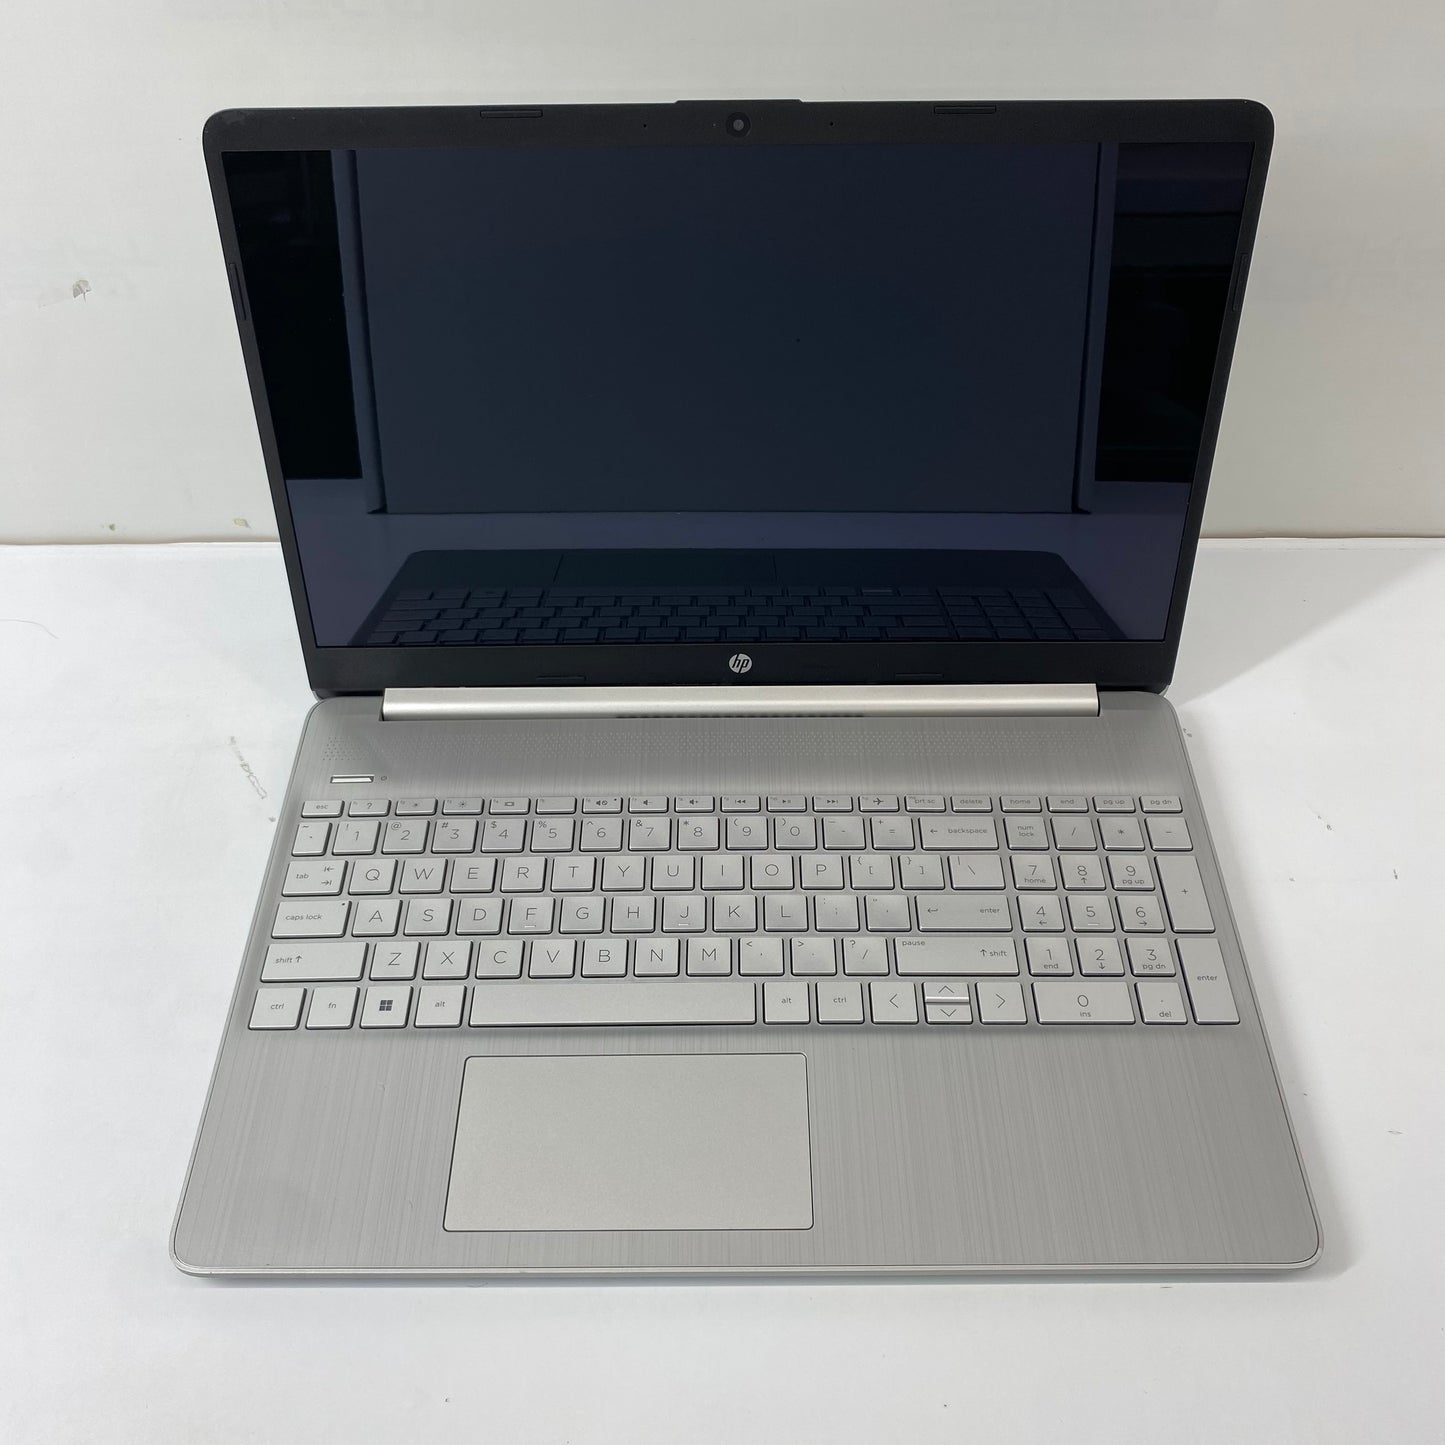 HP Laptop 15-d72046nr 15.6" i3-1115G4 3.0GHz 8GB RAM 256GB SSD Intel UHD